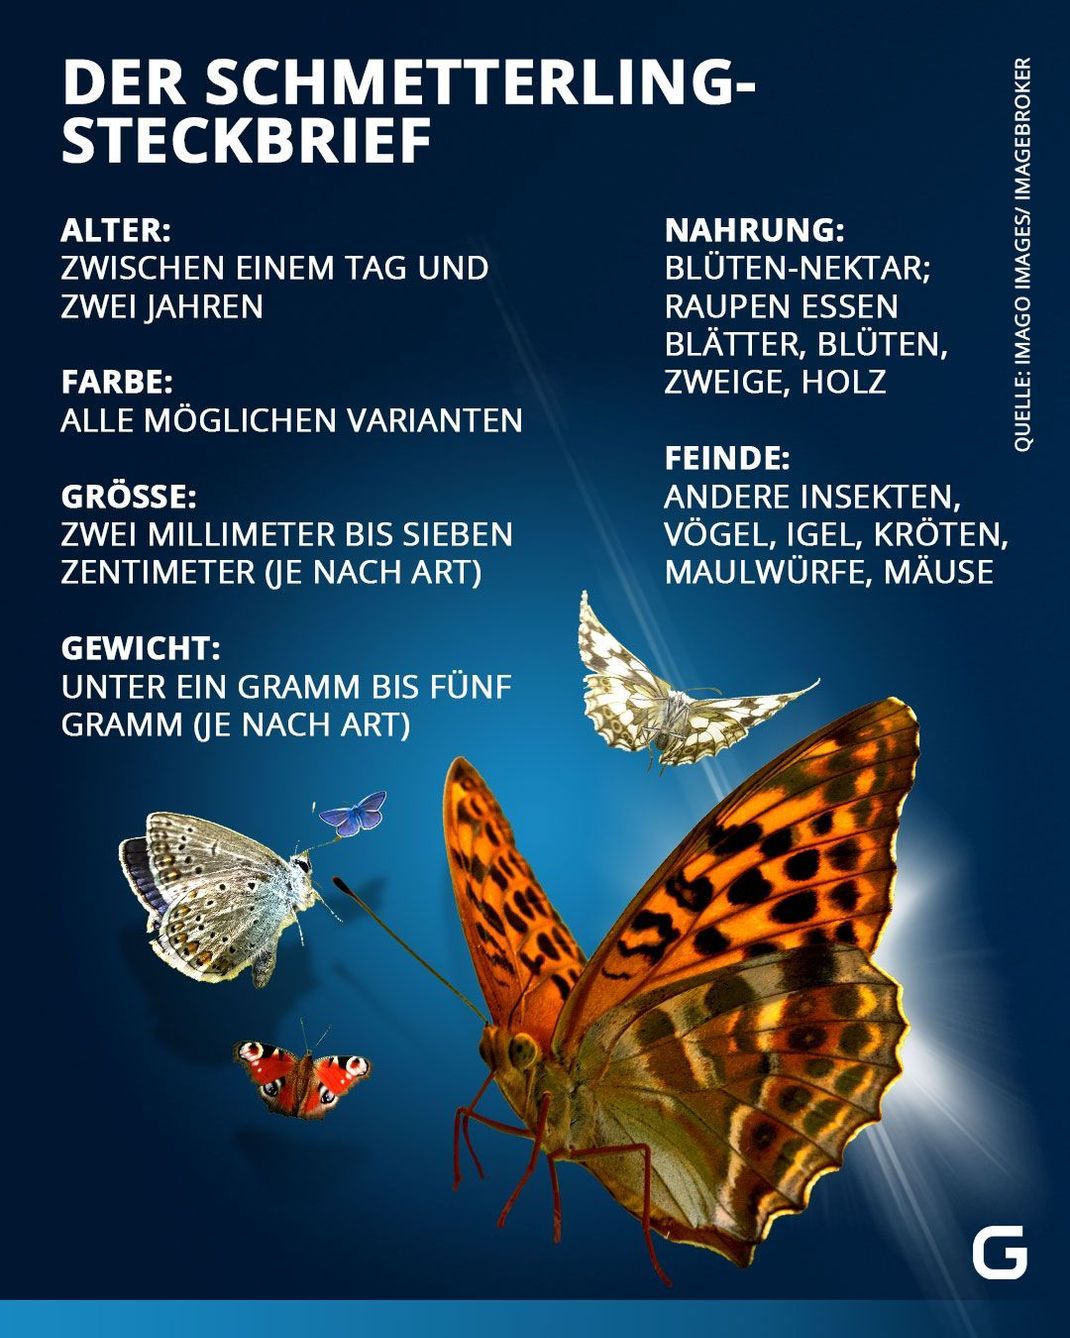 Steckbrief: Alter, Farbe, Größe, Gewicht, Nahrung und Feinde von Schmetterlingen. 